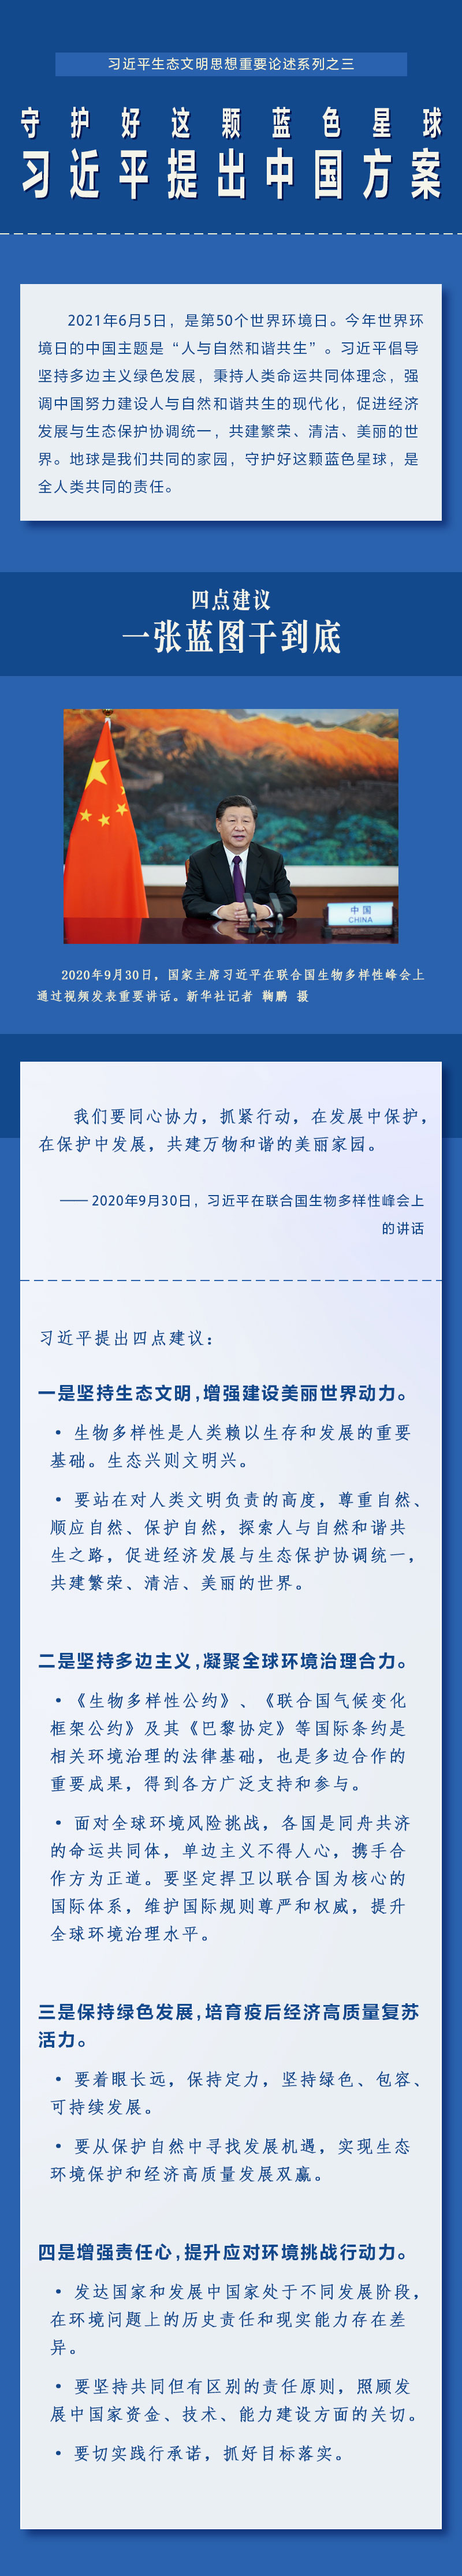 习近平提出中国方案1 人民网-中国共产党新闻网.jpg